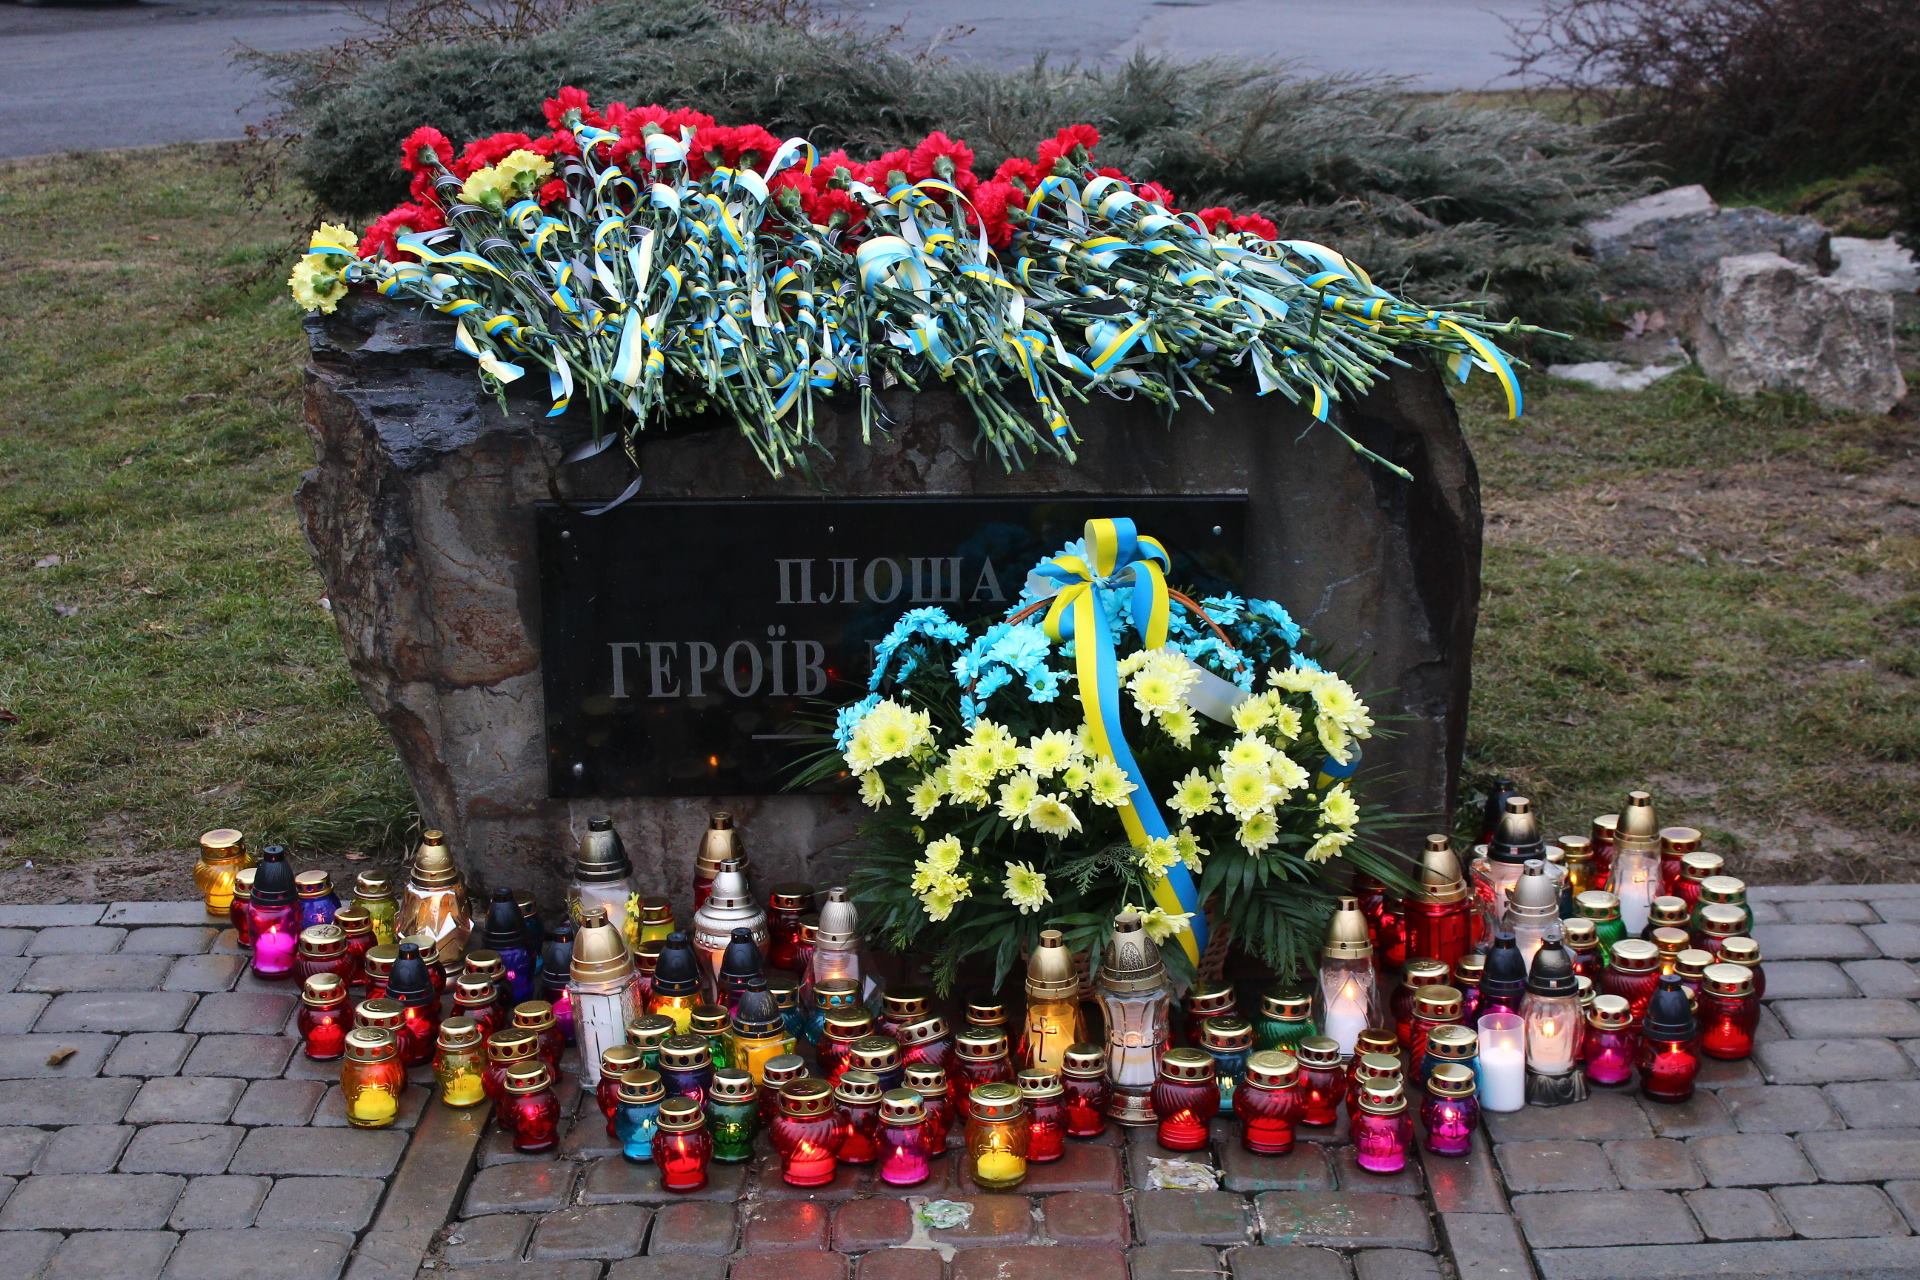 Сьогодні мукачівці зібралися на площі Героїв Майдану, щоб вшанувати пам’ять захисників гідності та свободи, які віддали своє життя за краще майбутнє українського народу.